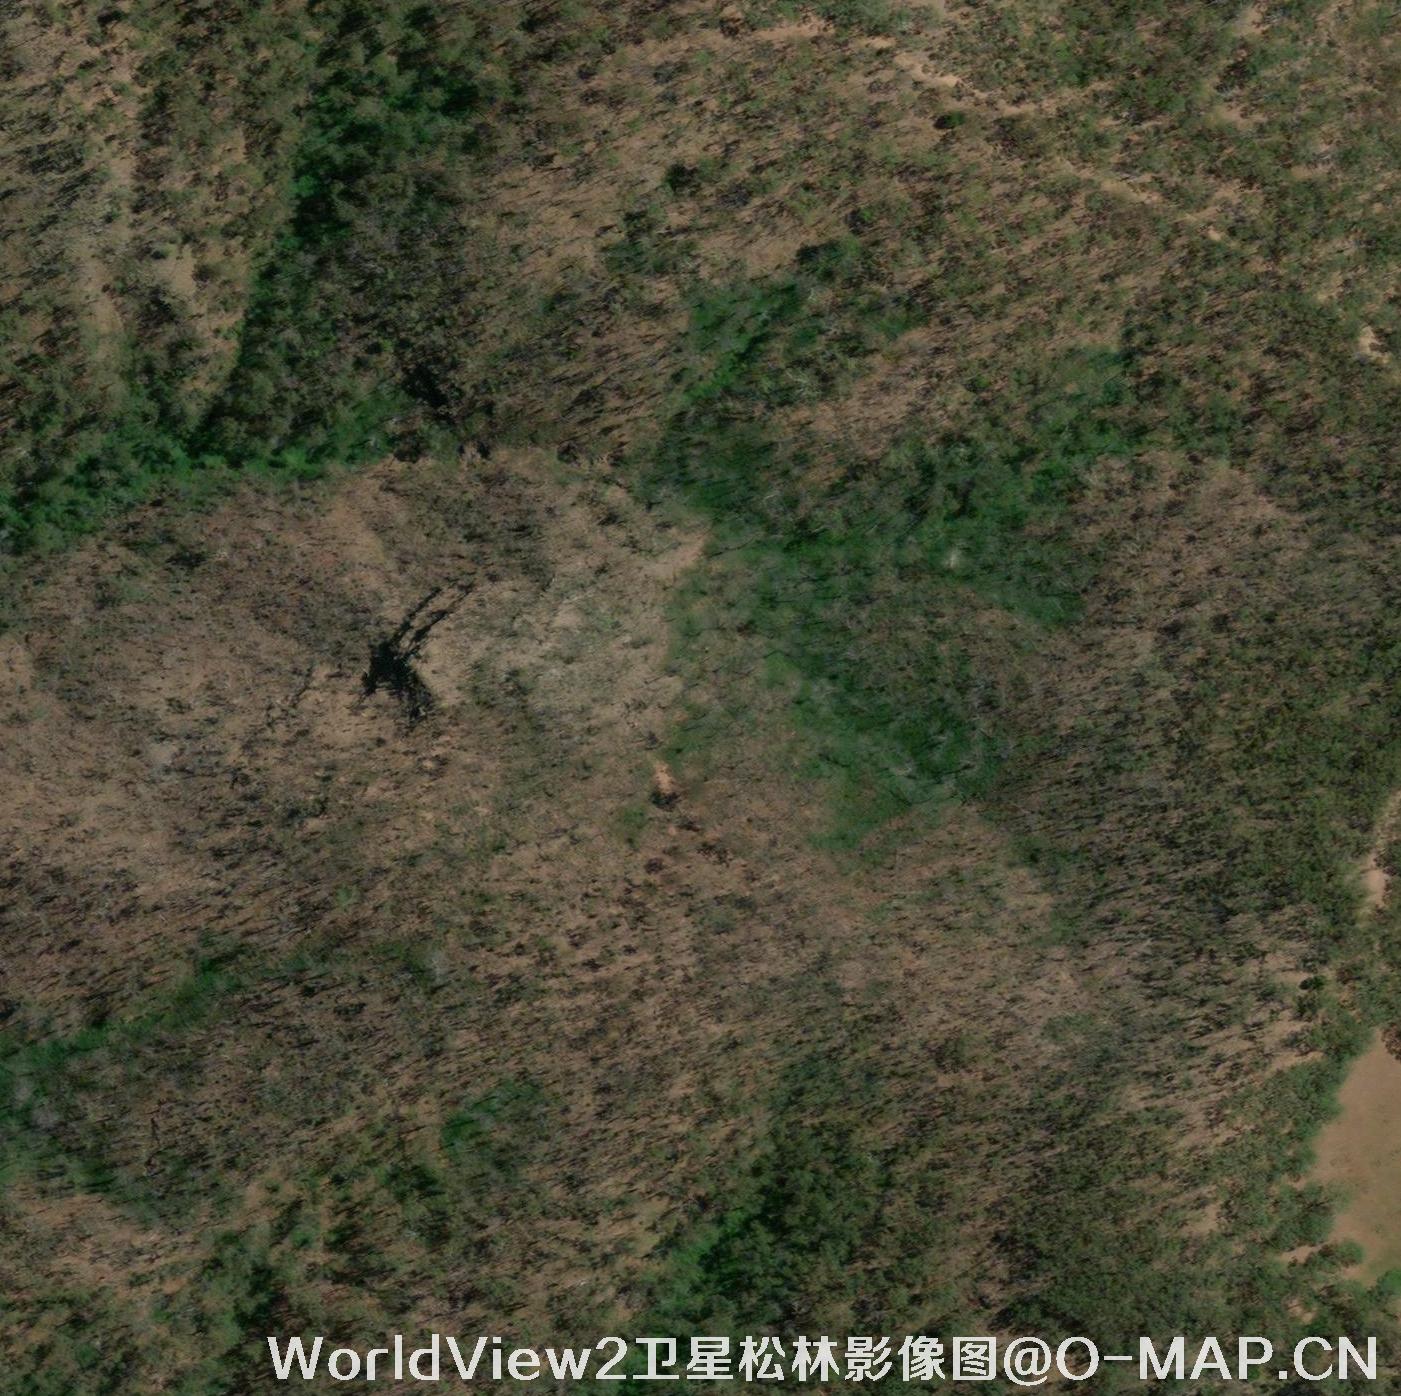 WorldView2卫星拍摄的高清图片